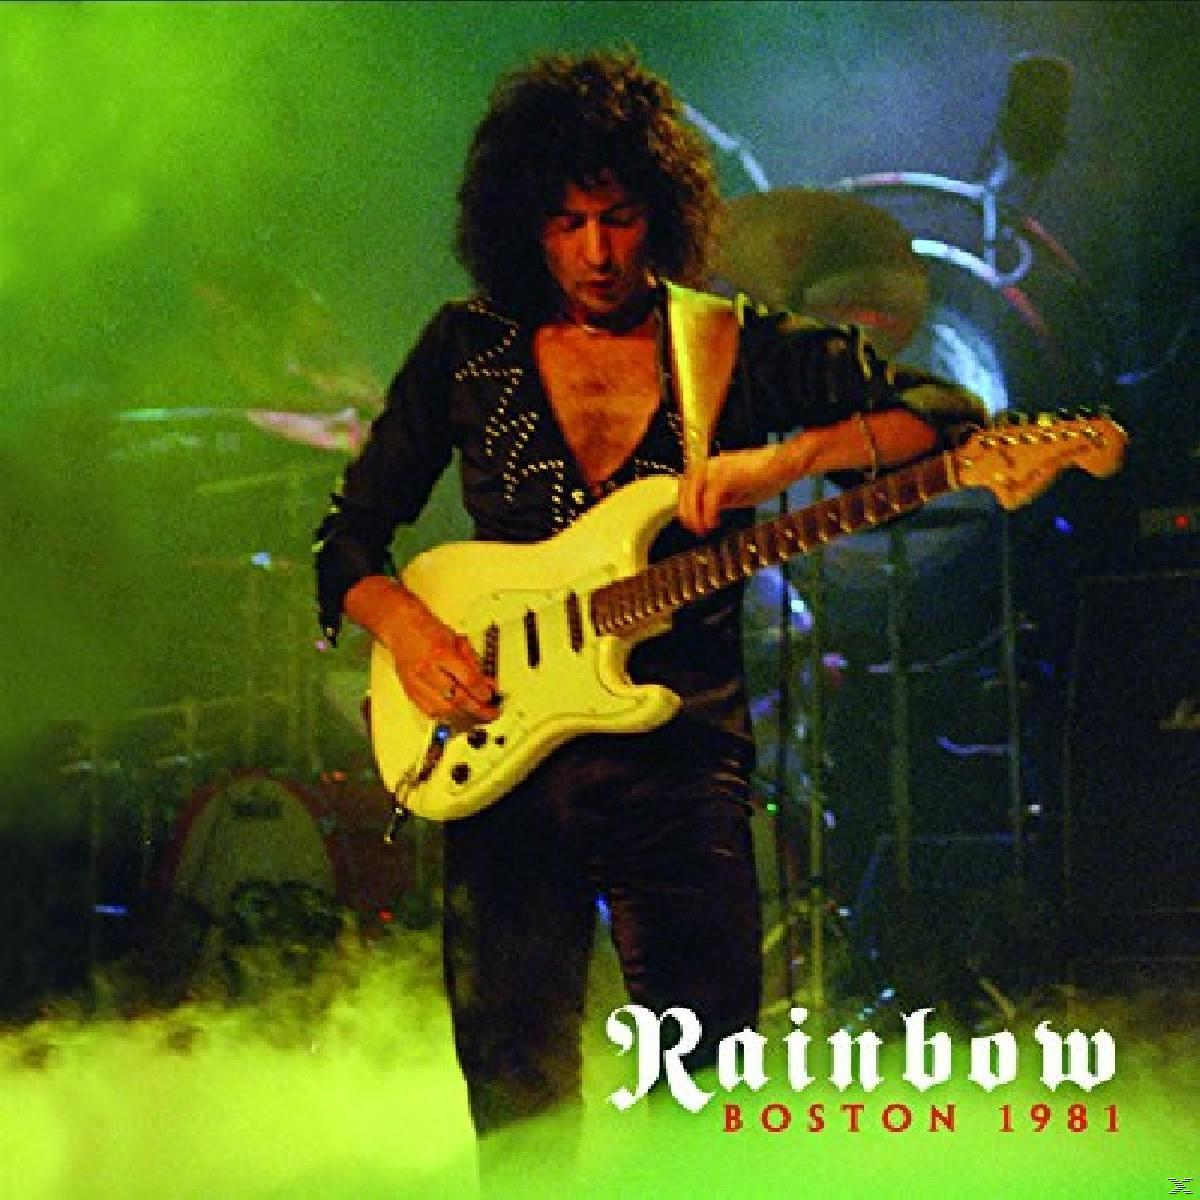 Rainbow (Vinyl) - - Boston 1981